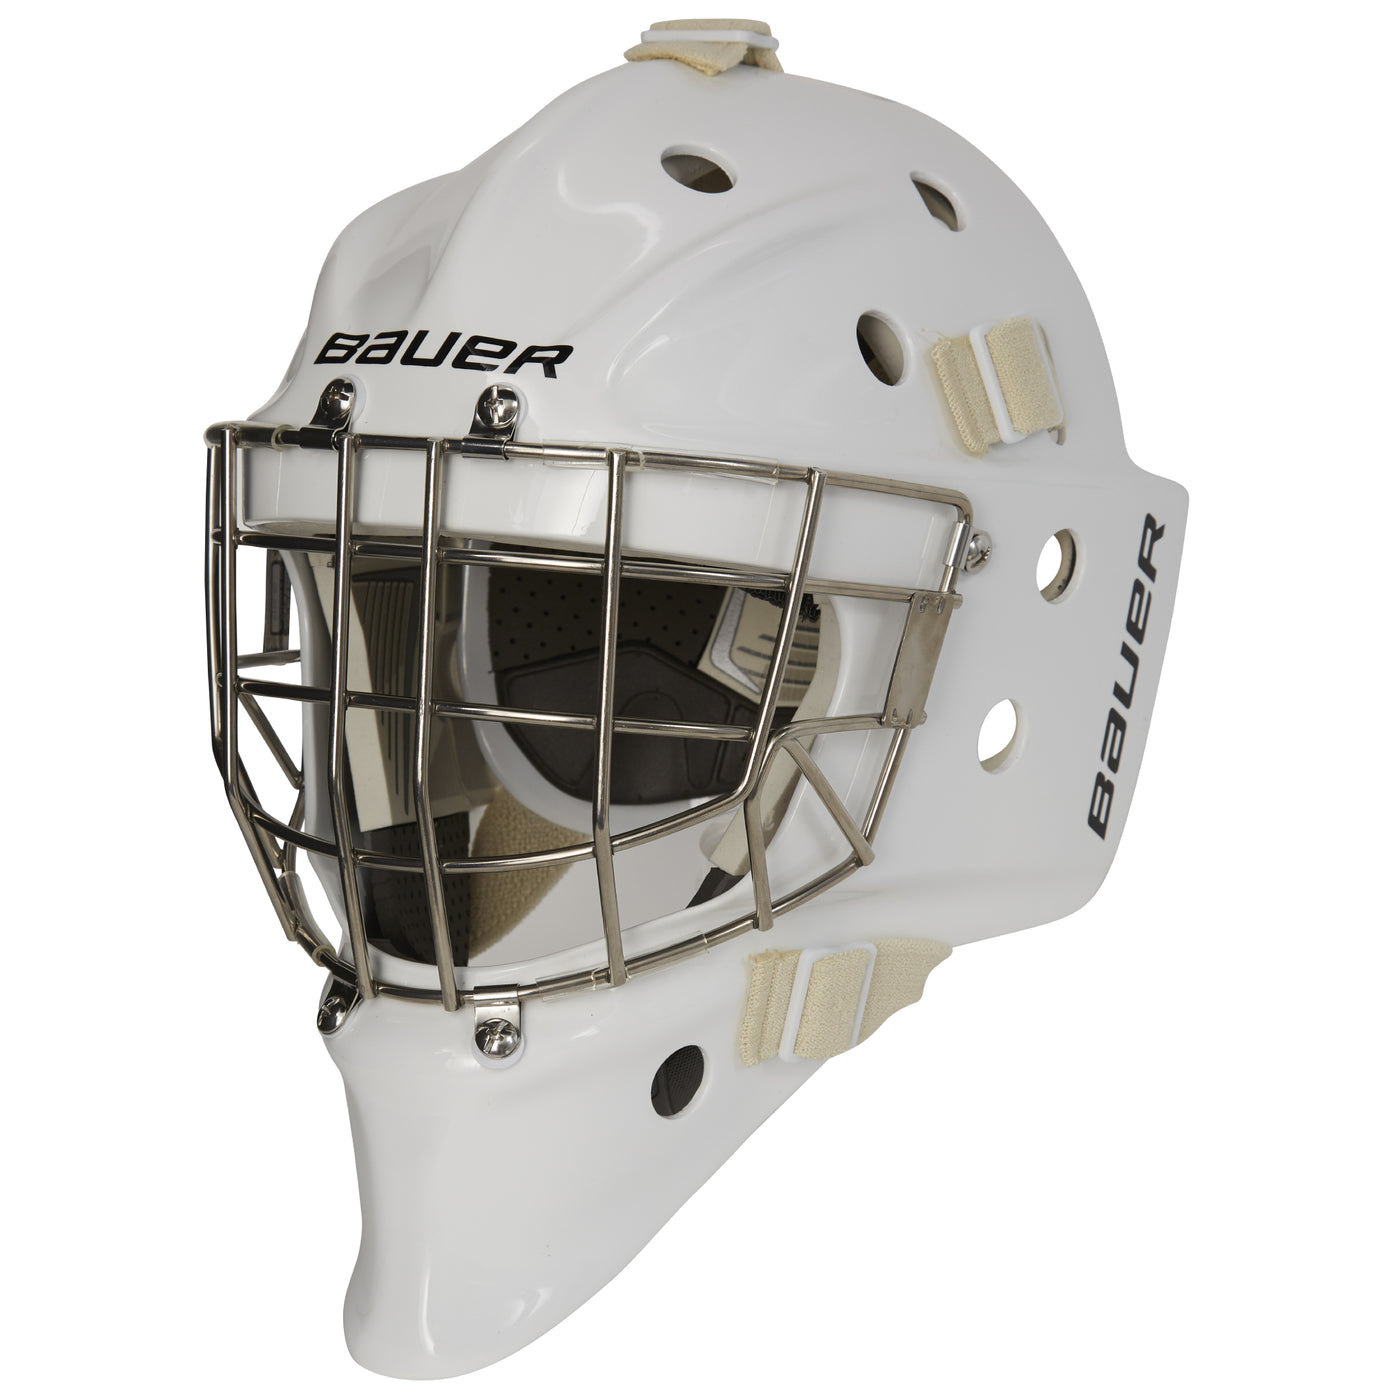 BAUER 960 Goalie Mask - SR (Certified)